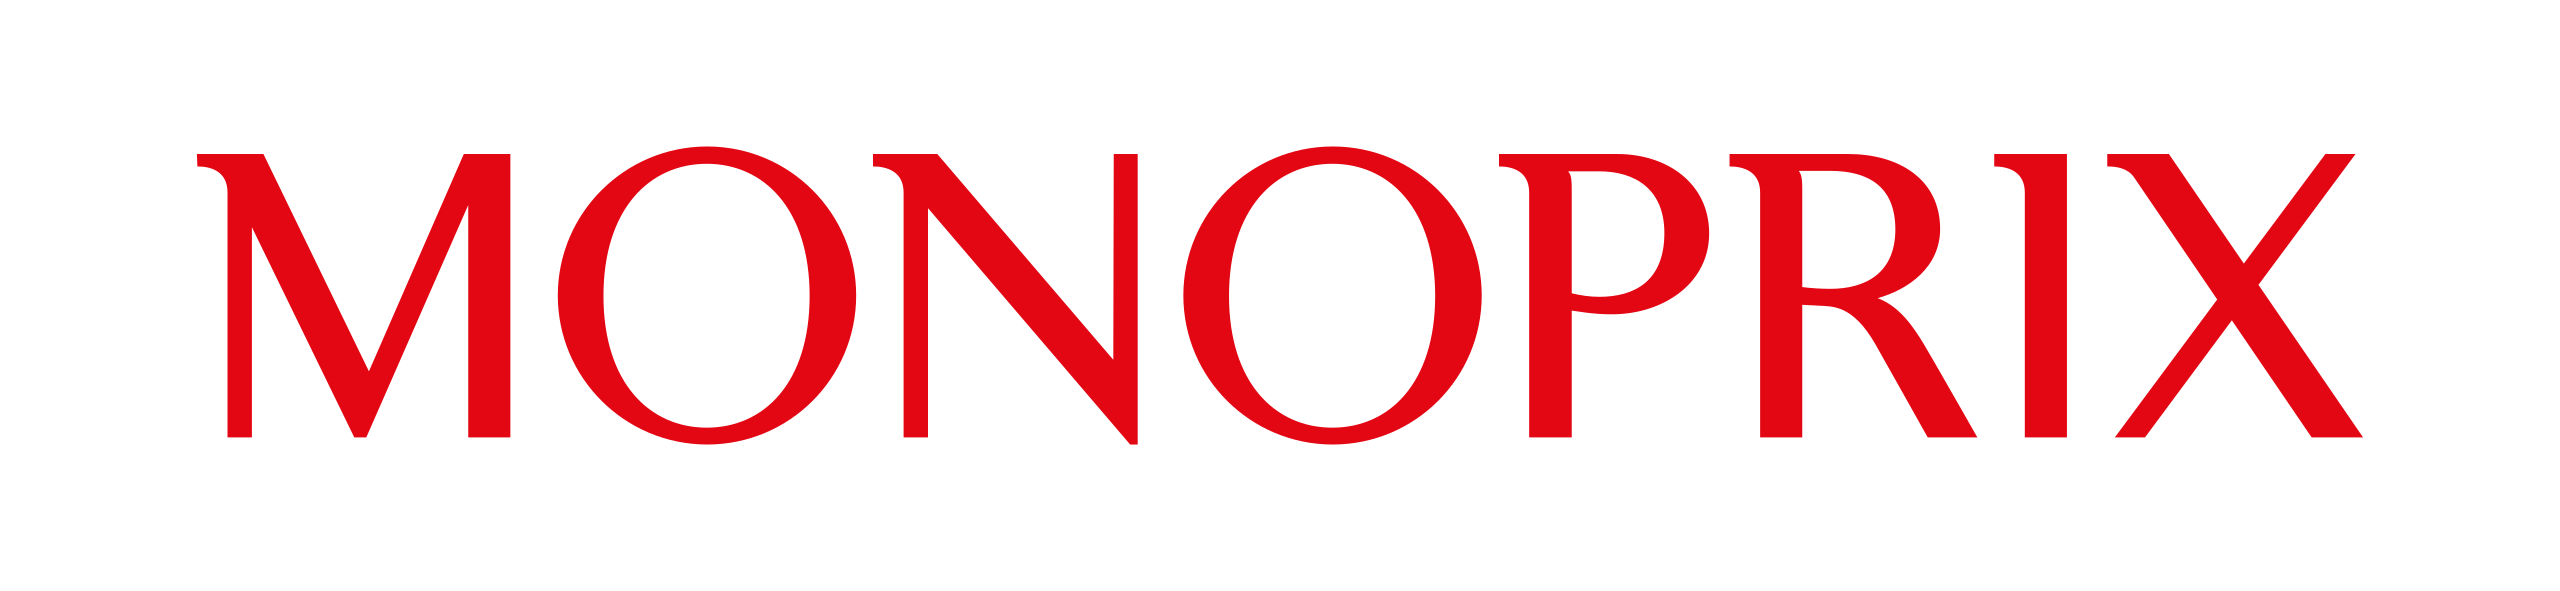 Monoprix_logo